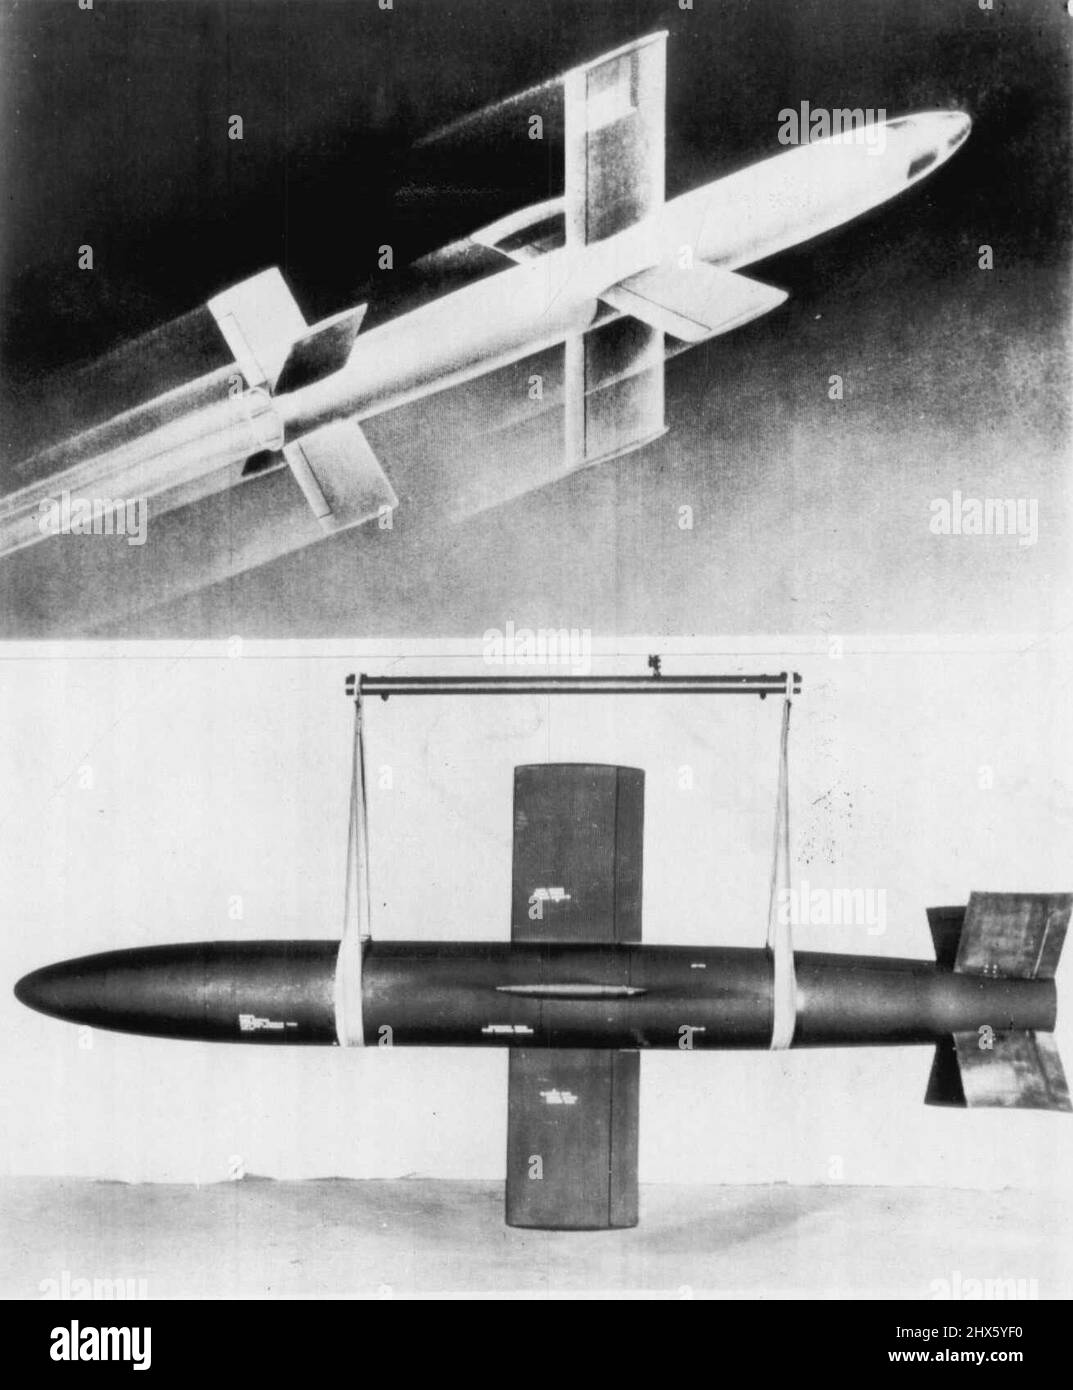 Navy svela missile a razzo -- la Marina ha svelato uno dei suoi ultimi missili guidati con il rilascio di queste immagini del Fairchild Lark, un missile guidato nave-aria a razzo classificato ufficialmente come XSAM-N-2. In cima è la concezione dell'artista del Lark in volo. In fondo il Lark è stato readied per la consegna alla fabbrica a Farmingdale, N.Y. il missile è stato sottoposto a test presso il Naval Air Missile Test Center, Point Mugu, Calif., ma le specifiche di costruzione e perfo Foto Stock